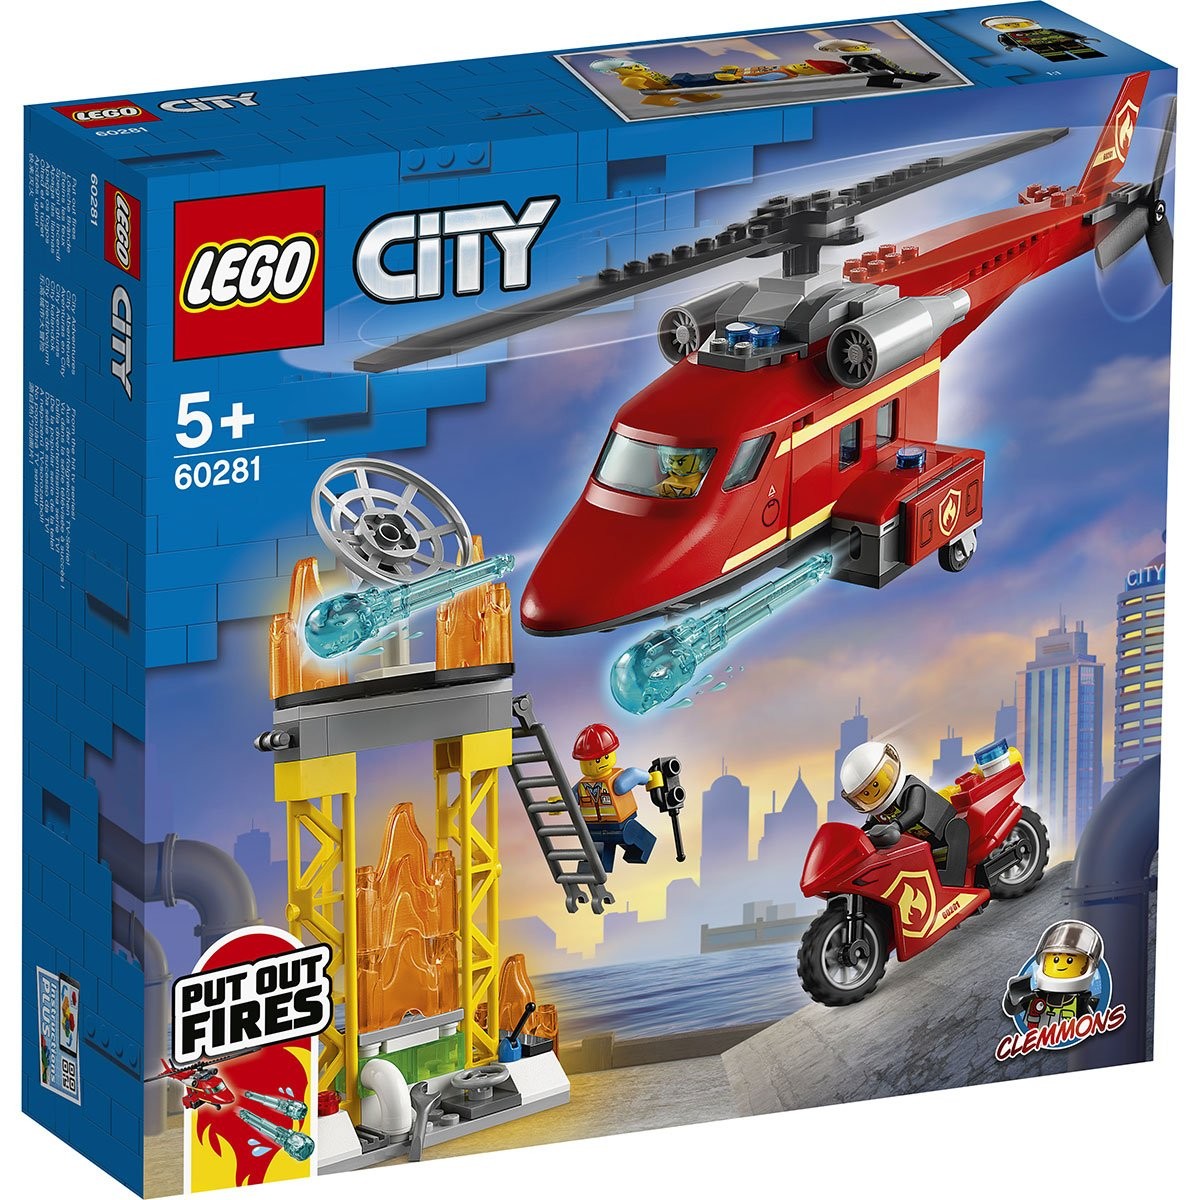 LEGO CITY 60275 L'helicoptere de la police - Juniors - Garcon